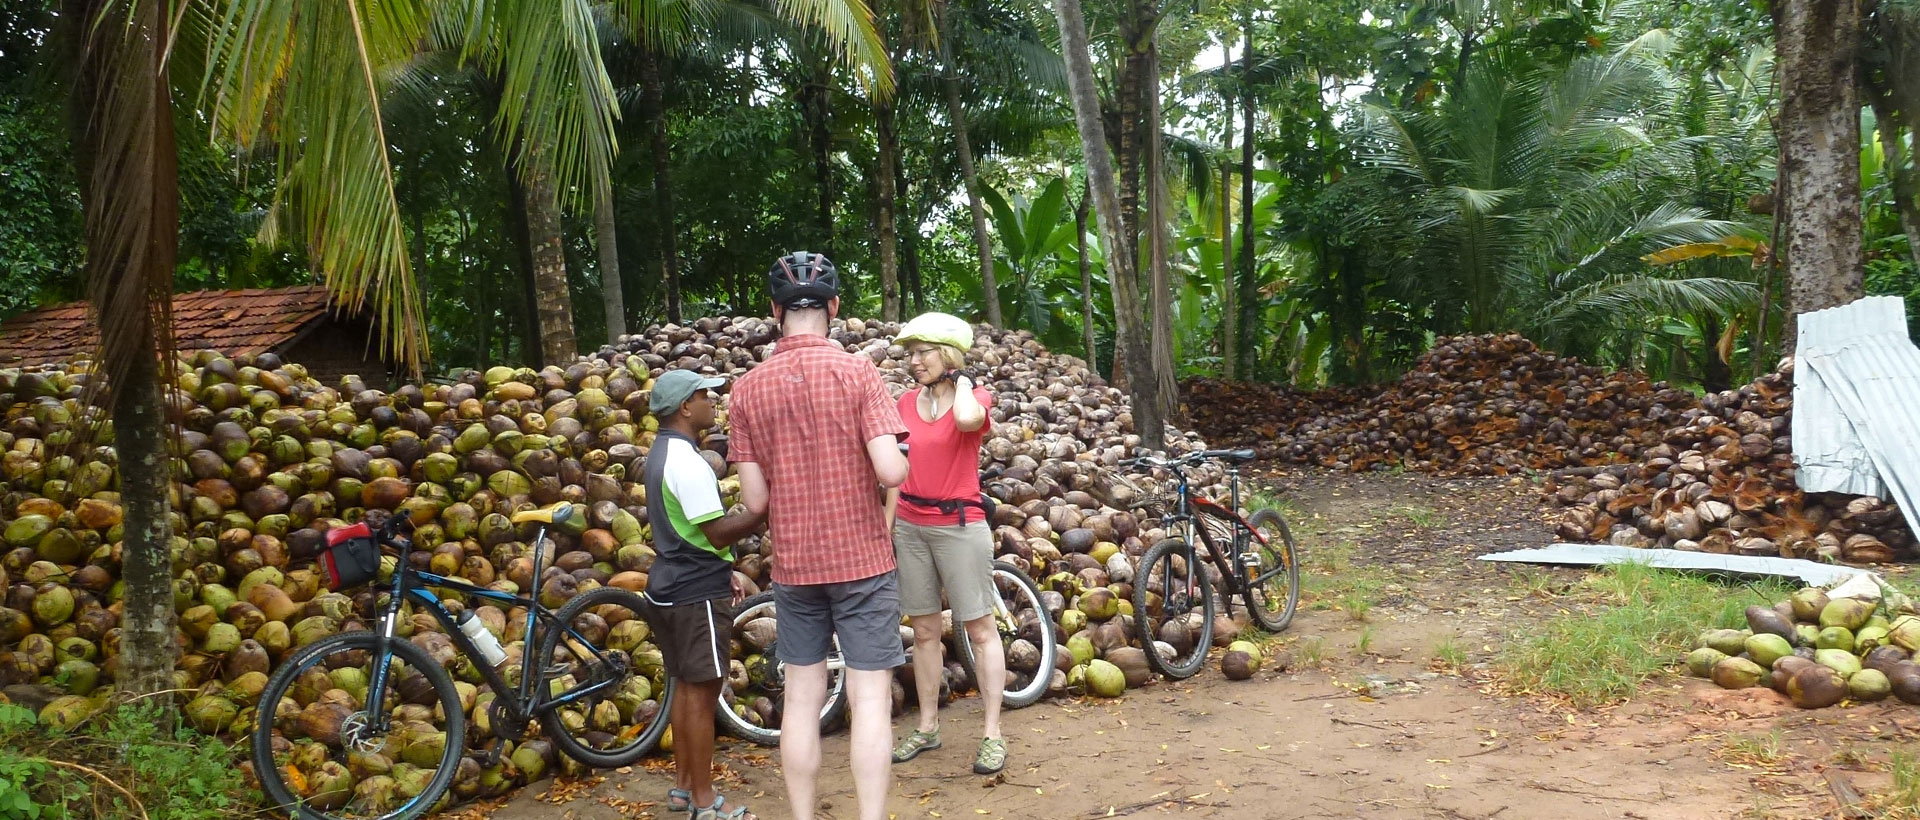 während der Radreise in Sri Lanka gibt es kurzen Unterricht über Kokosnüsse